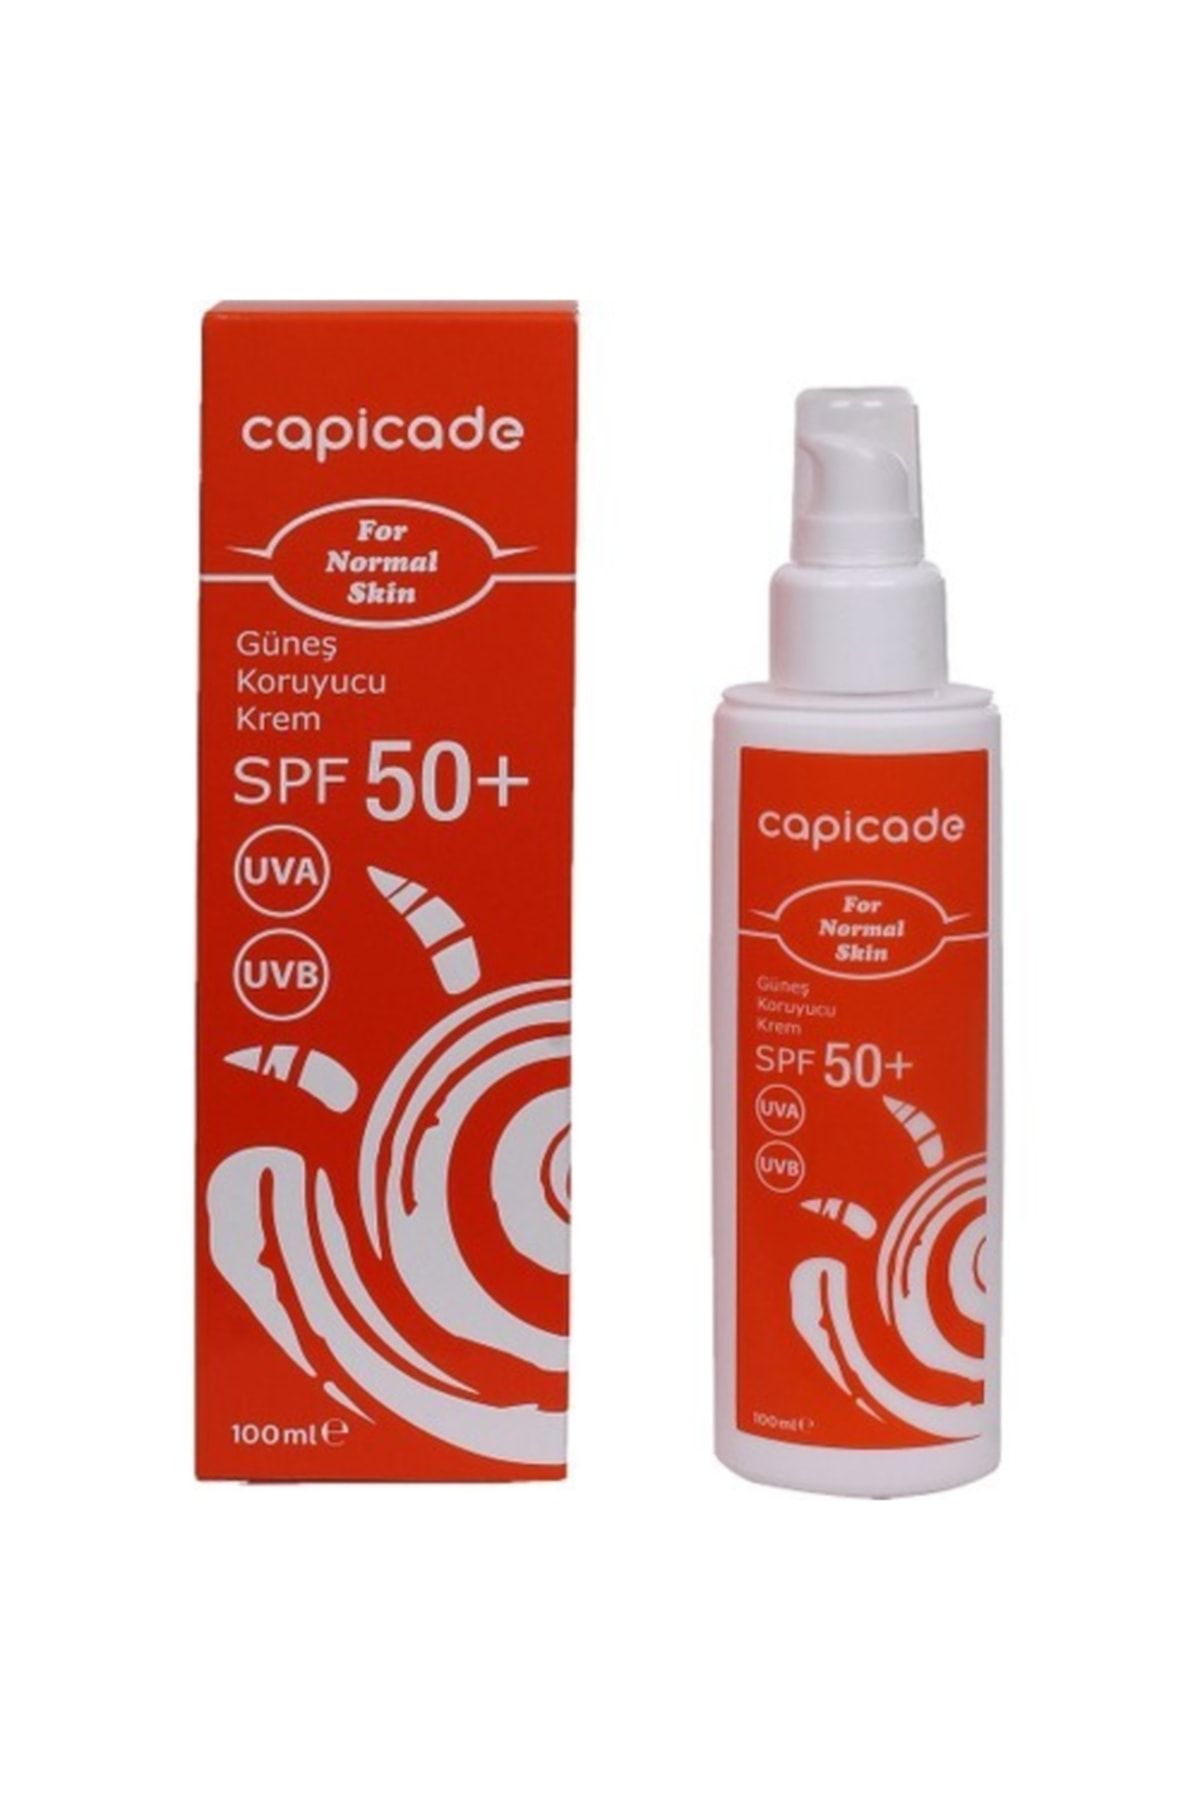 Capicade Güneş Koruyucu Krem Spf50+ 100ml For Normal Skin